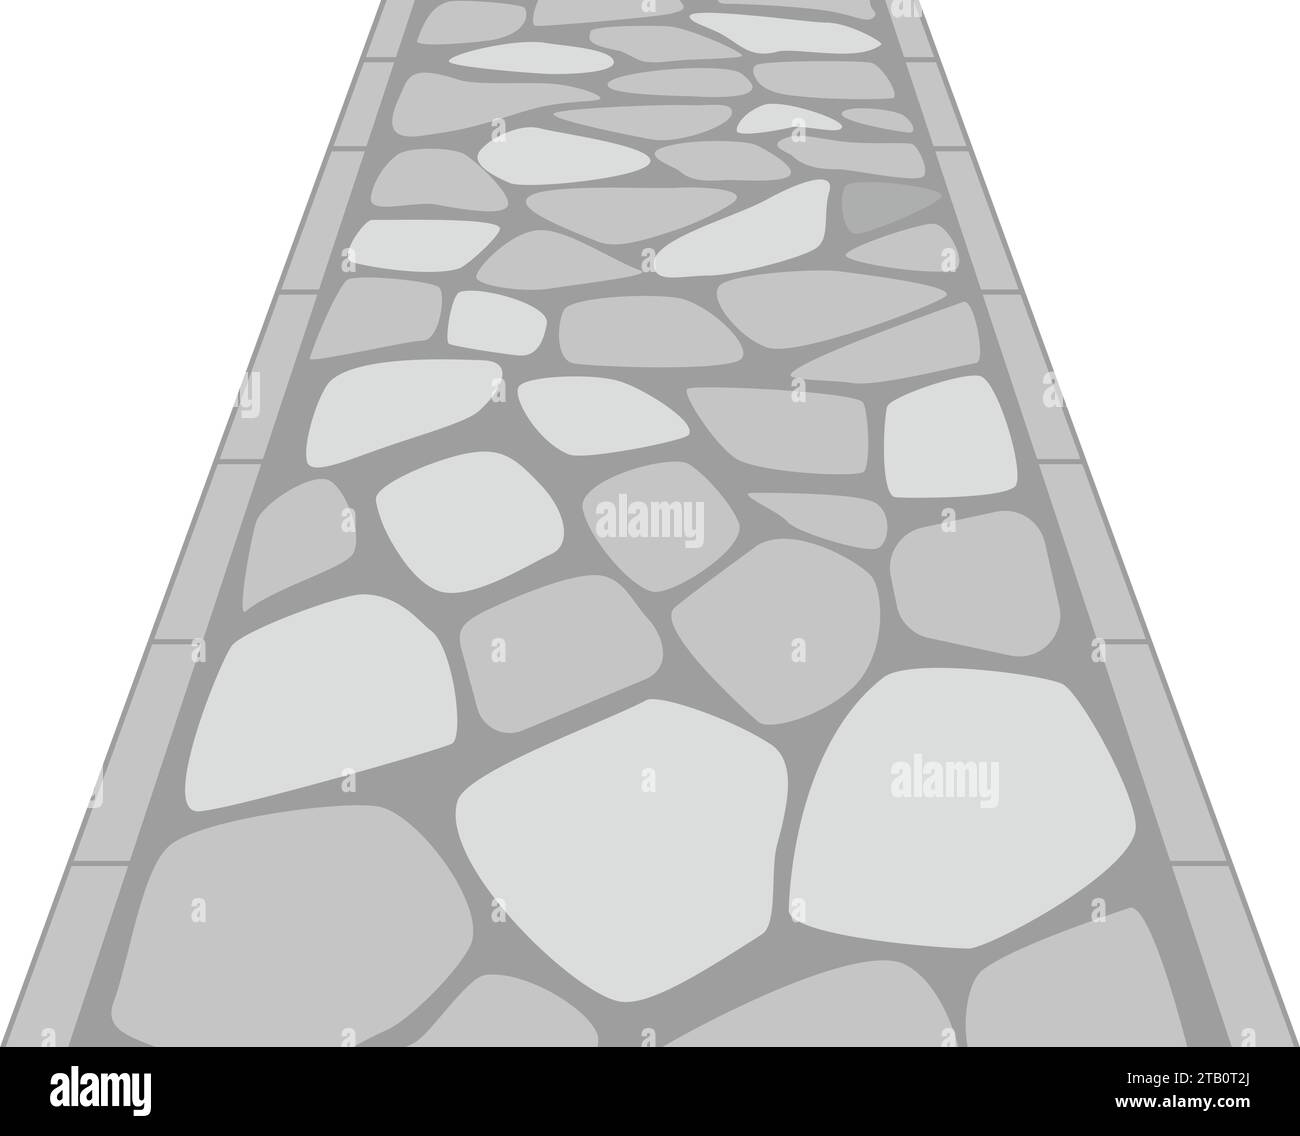 semplice strada acciottolata. Immagine di un approccio al santuario con pietre grigie. Strada in stile giapponese. Illustrazione Vettoriale